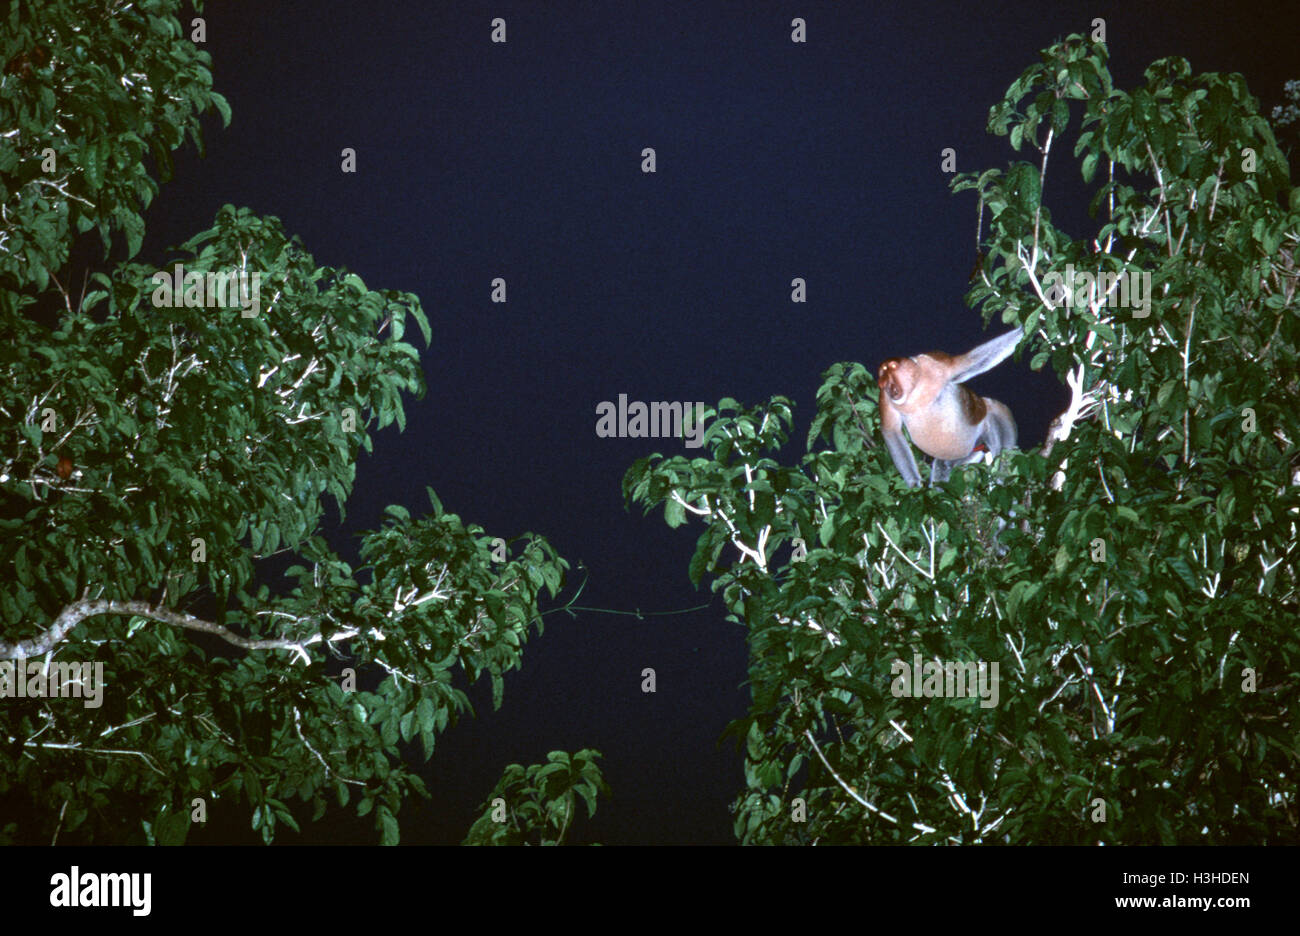 Proboscis monkey (Nasalis larvatus) Stock Photo